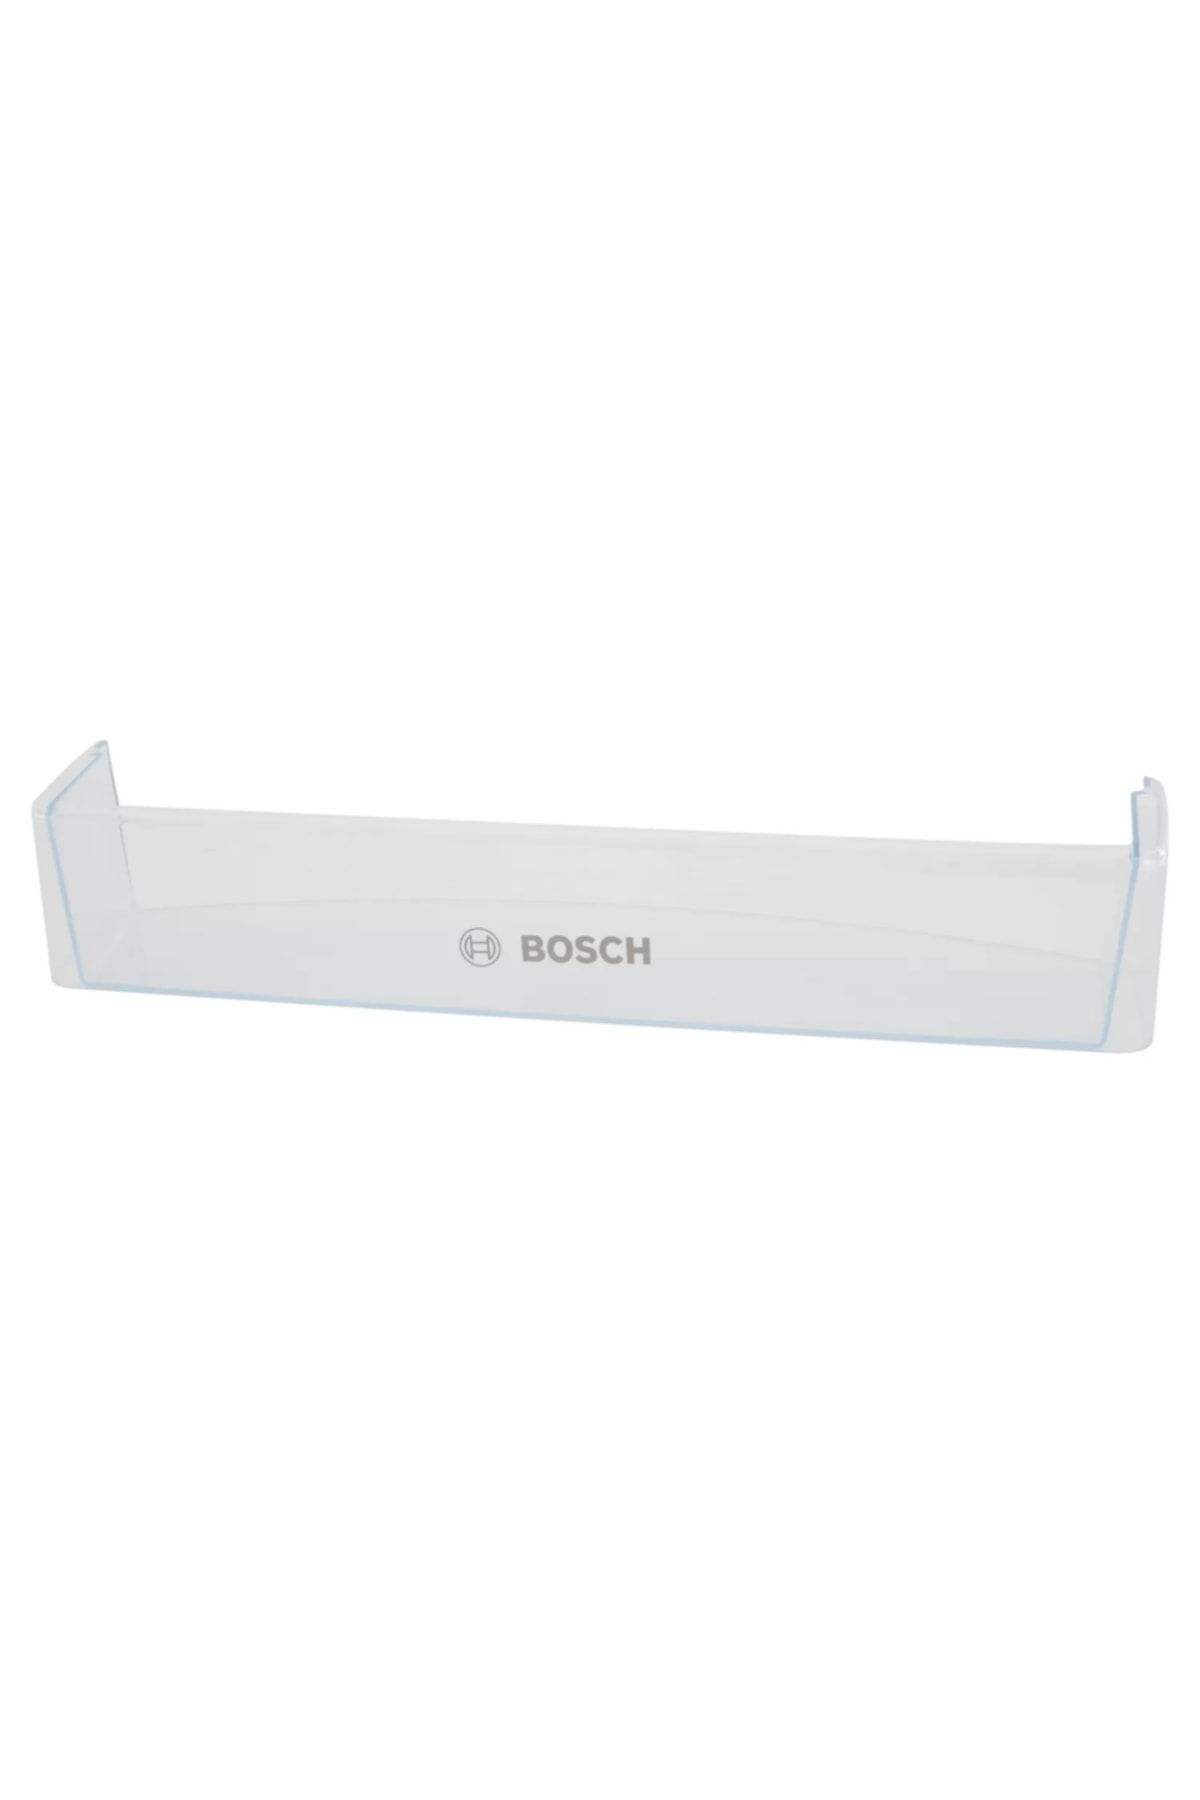 Bosch Siemens Buzdolabı Orijinal Şişe Rafı 11002971